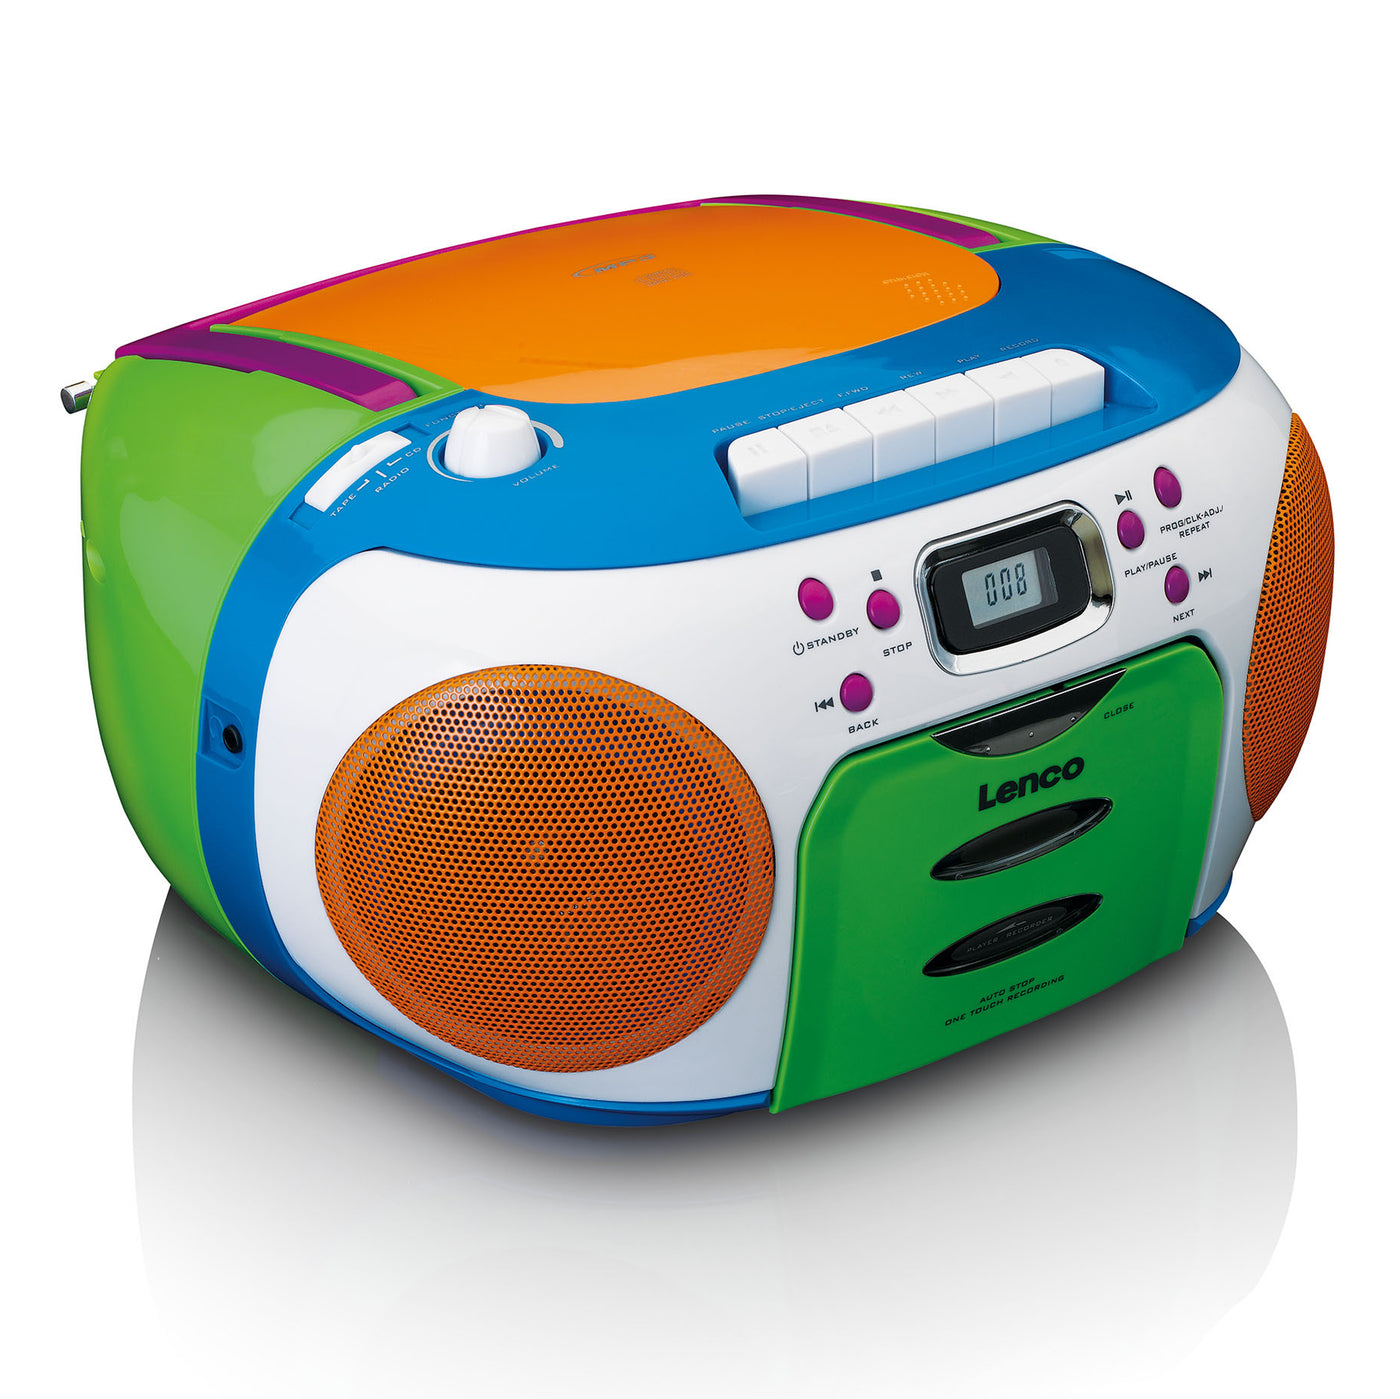 Lenco SCD-971 - Radio portable Lecteur CD et cassette enfants - Multi couleur